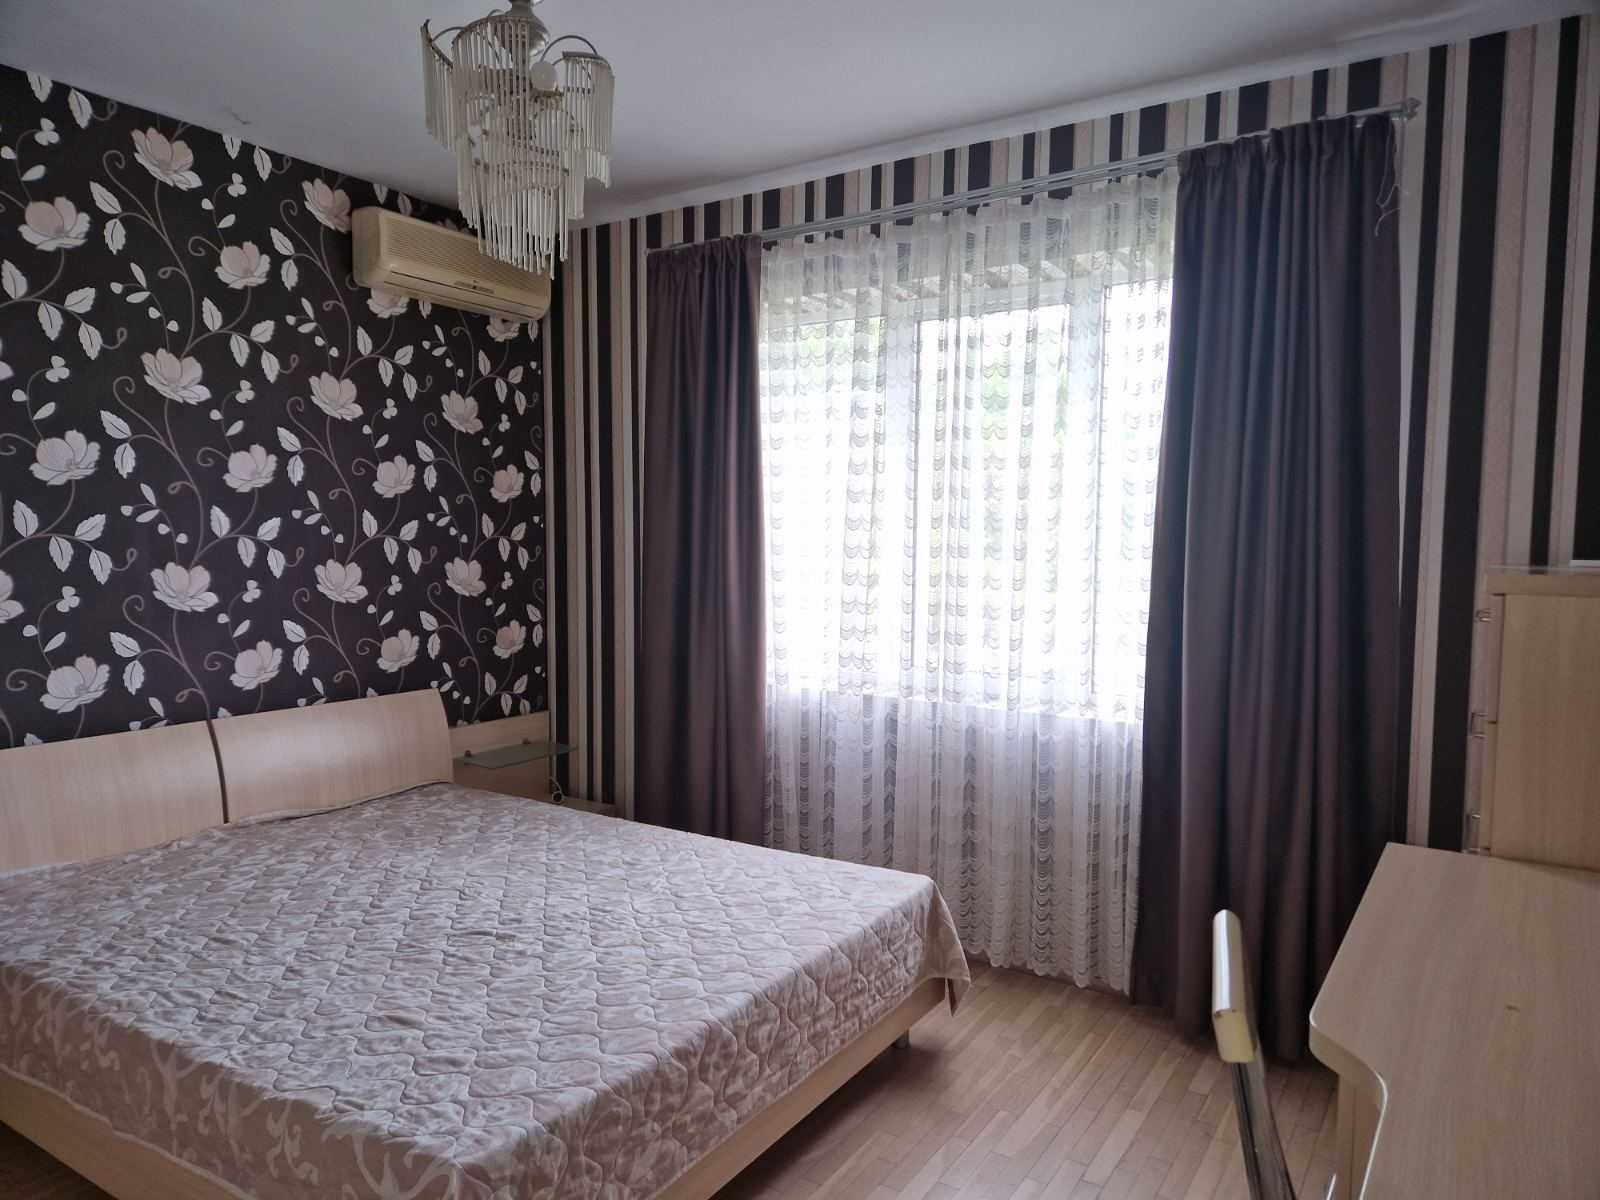 Апартамент под наем в Пловдив